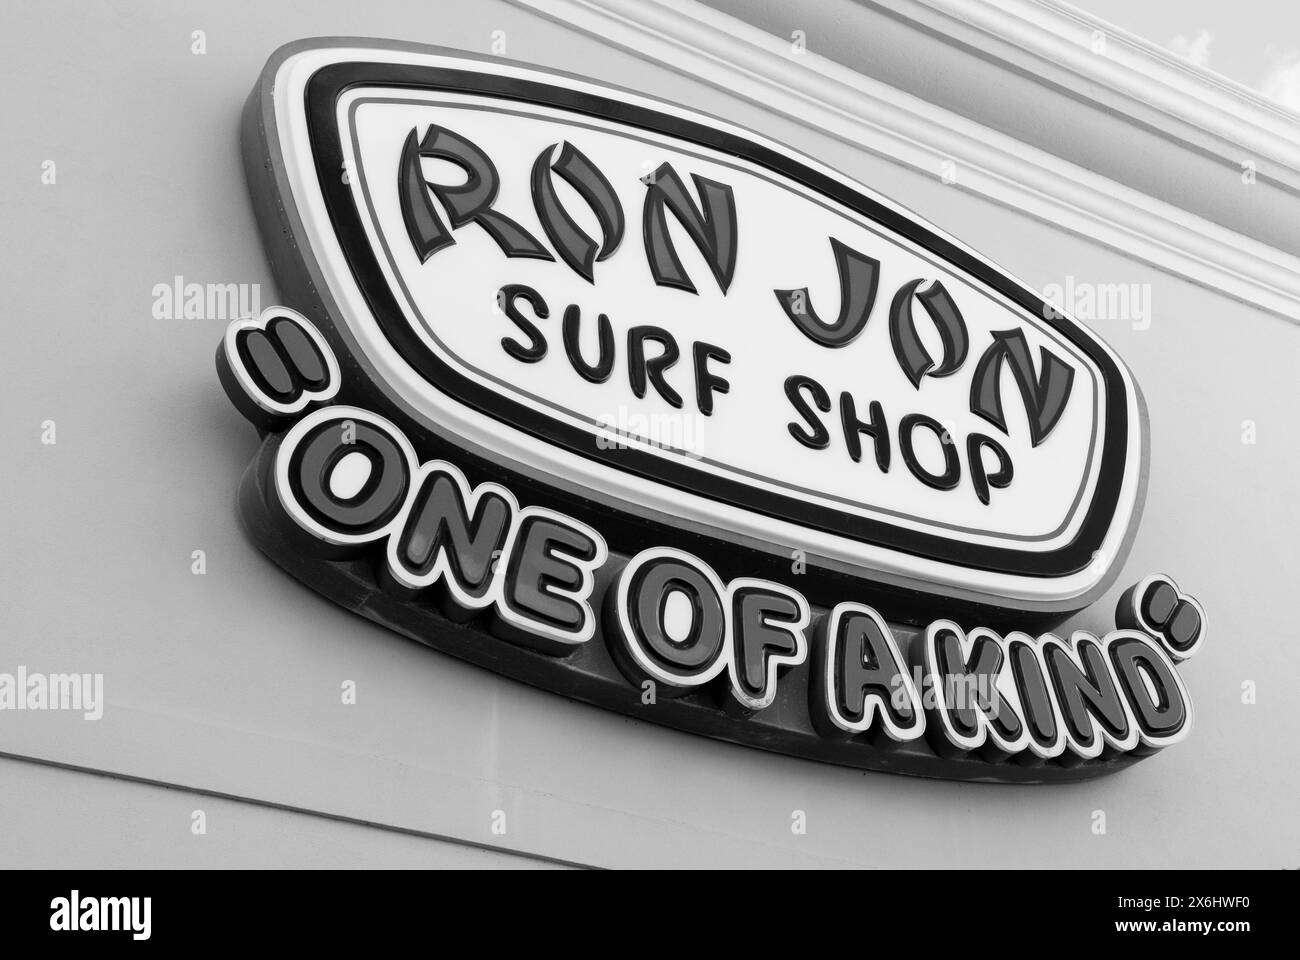 Ron Jon Surf Shop sign at Cocoa Beach, Florida, USA. Stock Photo